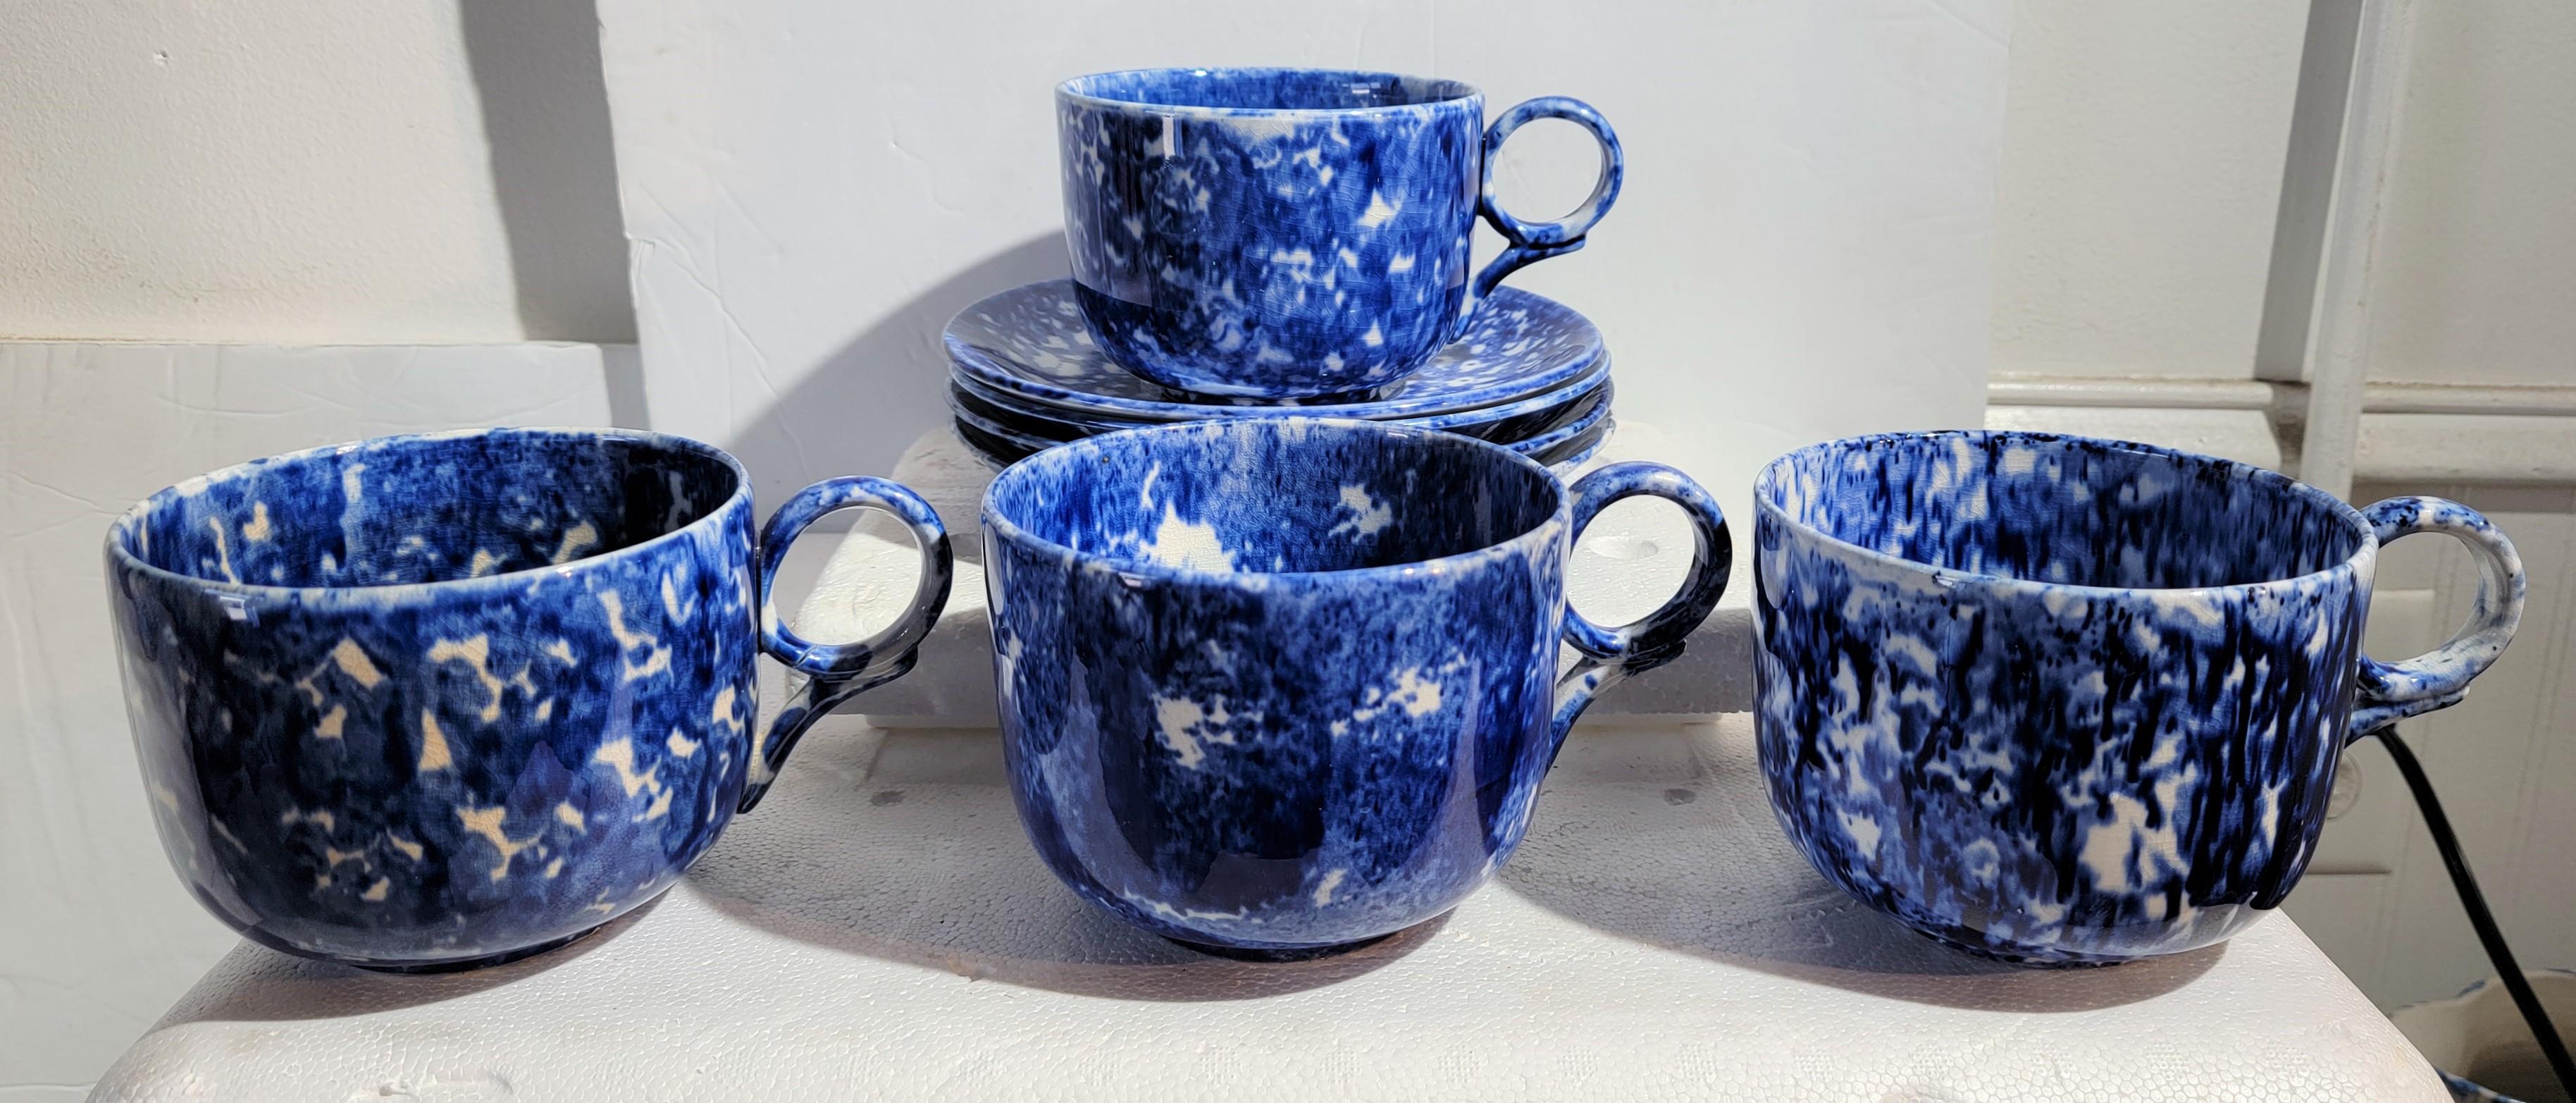 Cet ensemble de quatre tasses et soucoupes en éponge du 19e siècle est en parfait état, avec de nombreuses nuances de bleu. Vendu comme un ensemble de quatre tasses et soucoupes.

Les soucoupes mesurent 7 pouces de diamètre et 1 pouce de